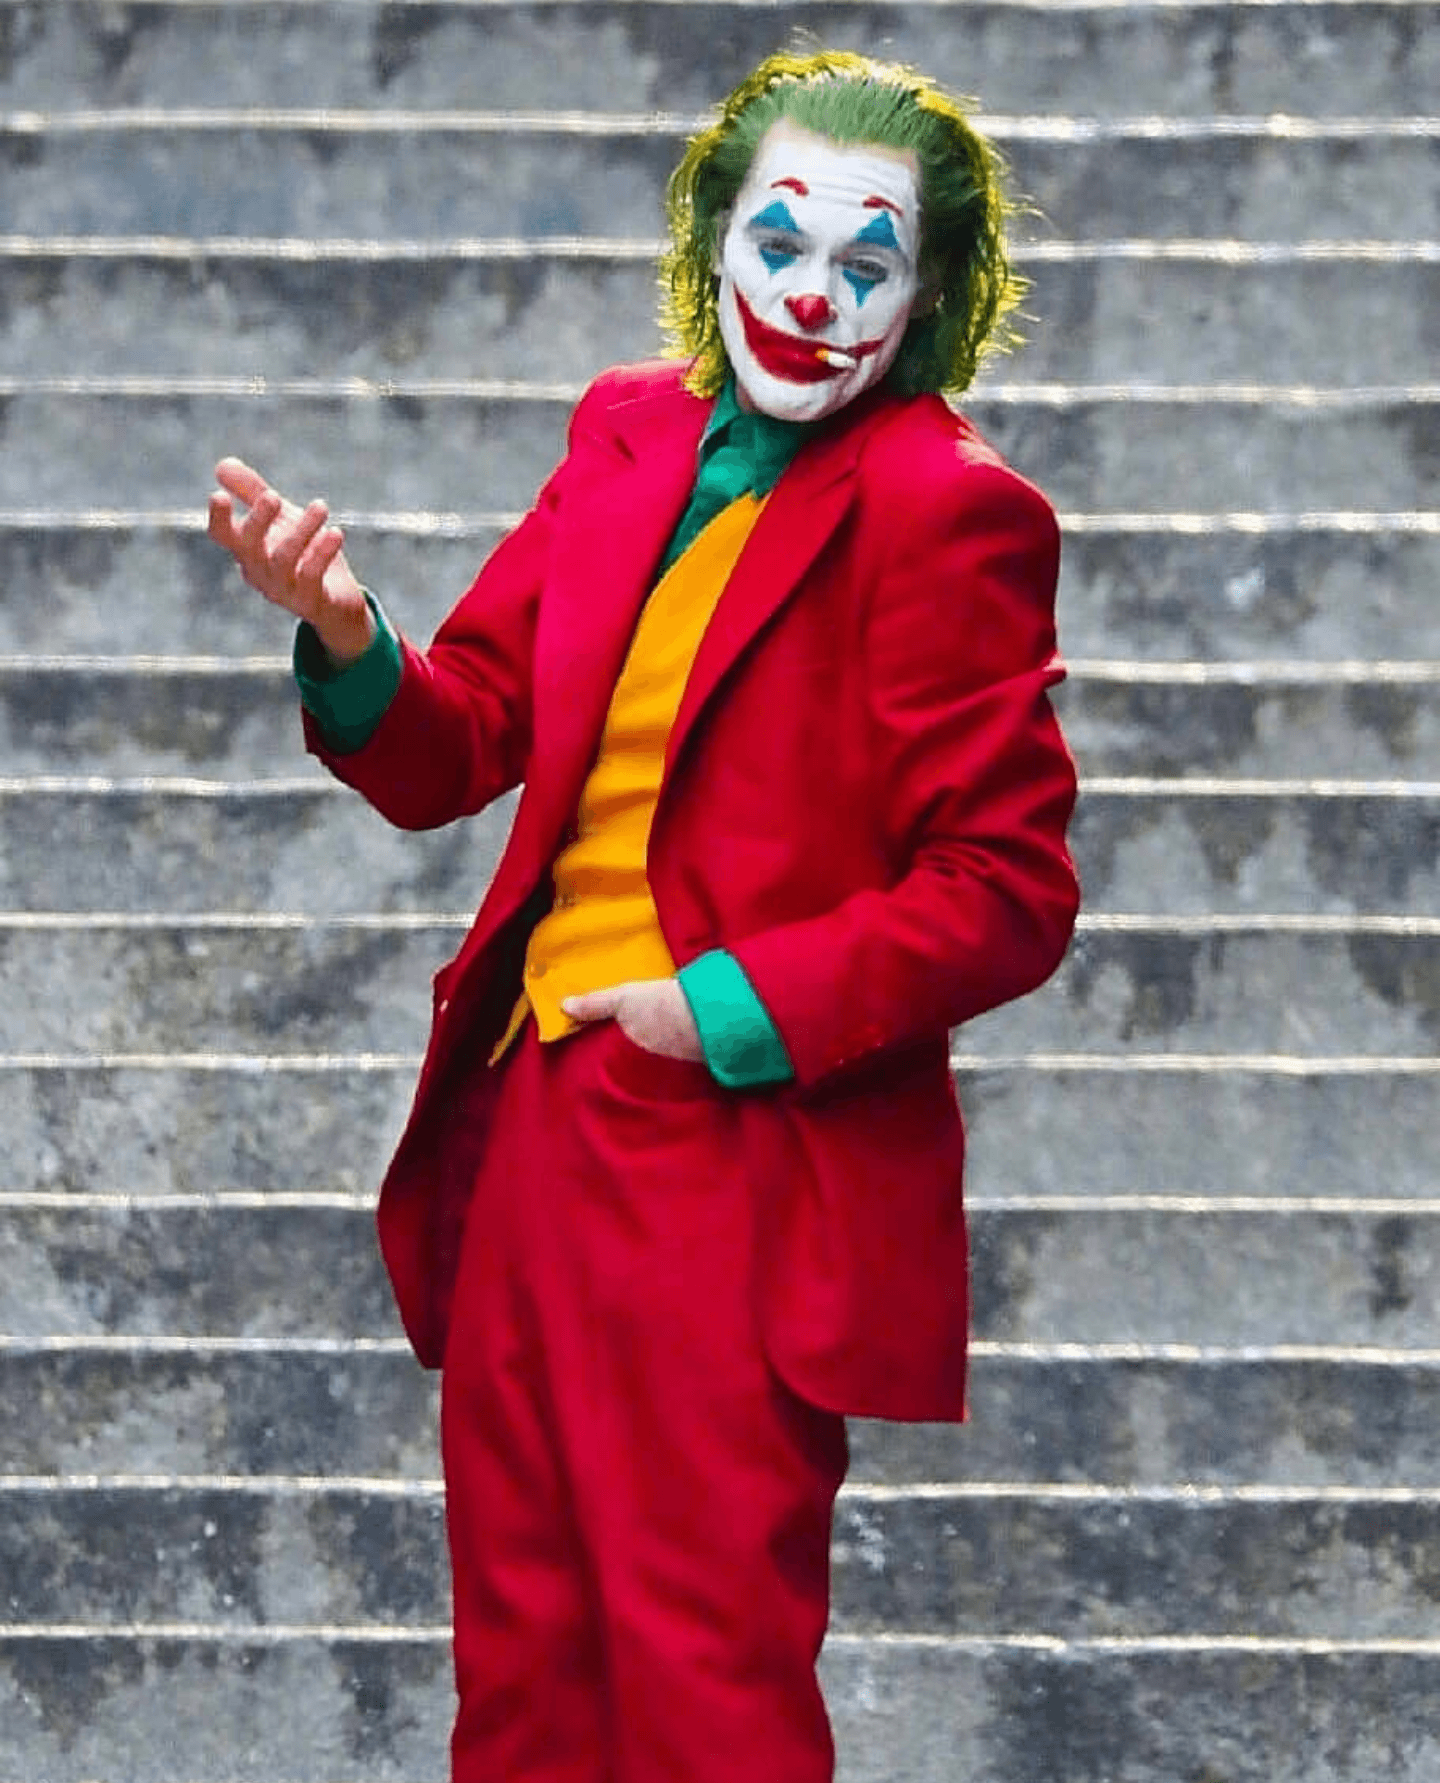 Joaquin Phoenix The Joker Movie 2019 Wallpapers - Wallpaper Cave